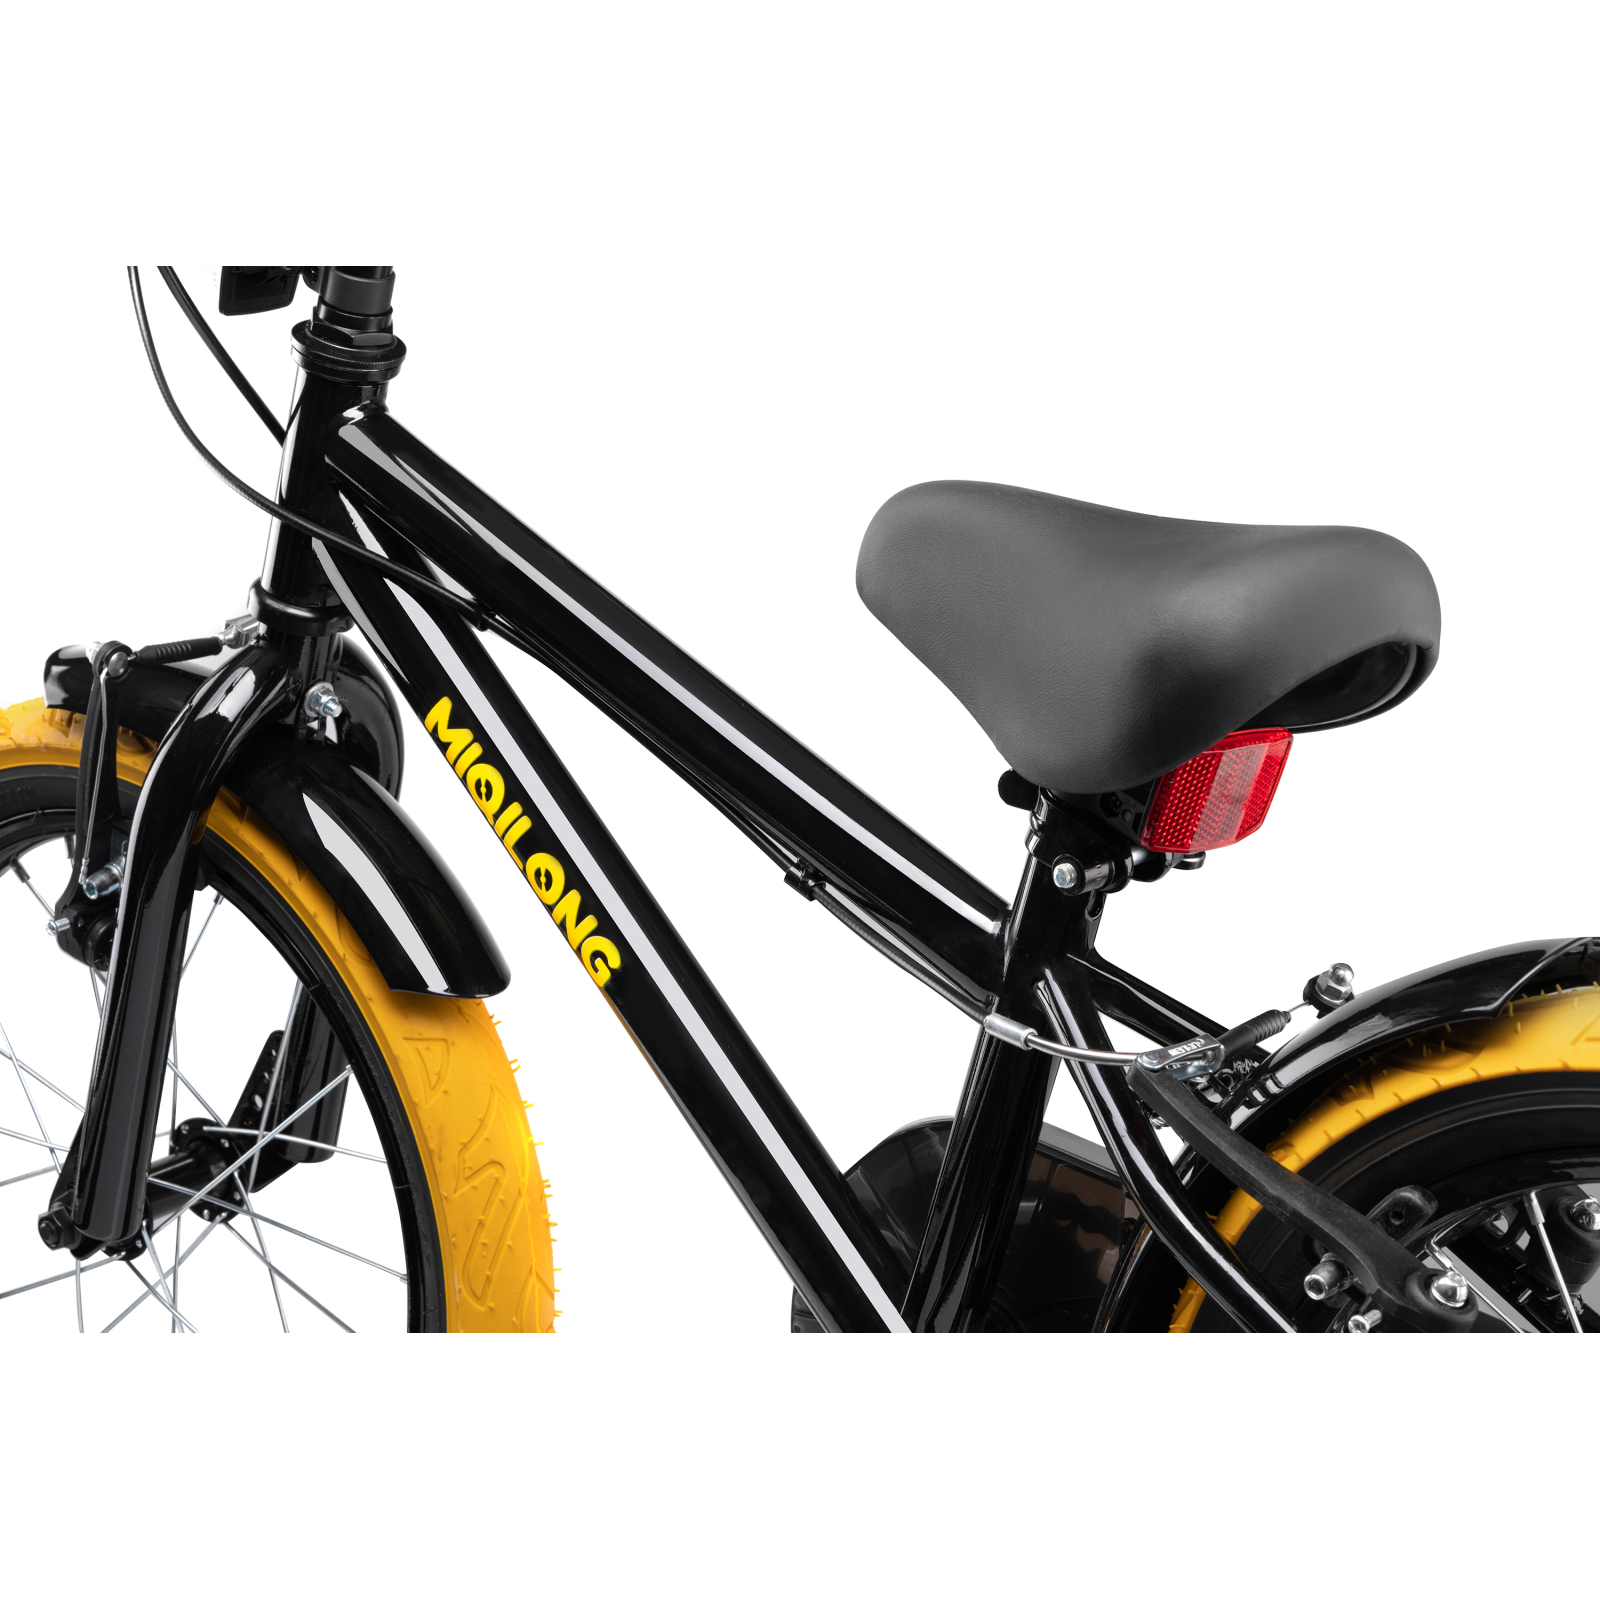 Детский велосипед Miqilong ST Черный 16` (ATW-ST16-BLACK) изображение 10